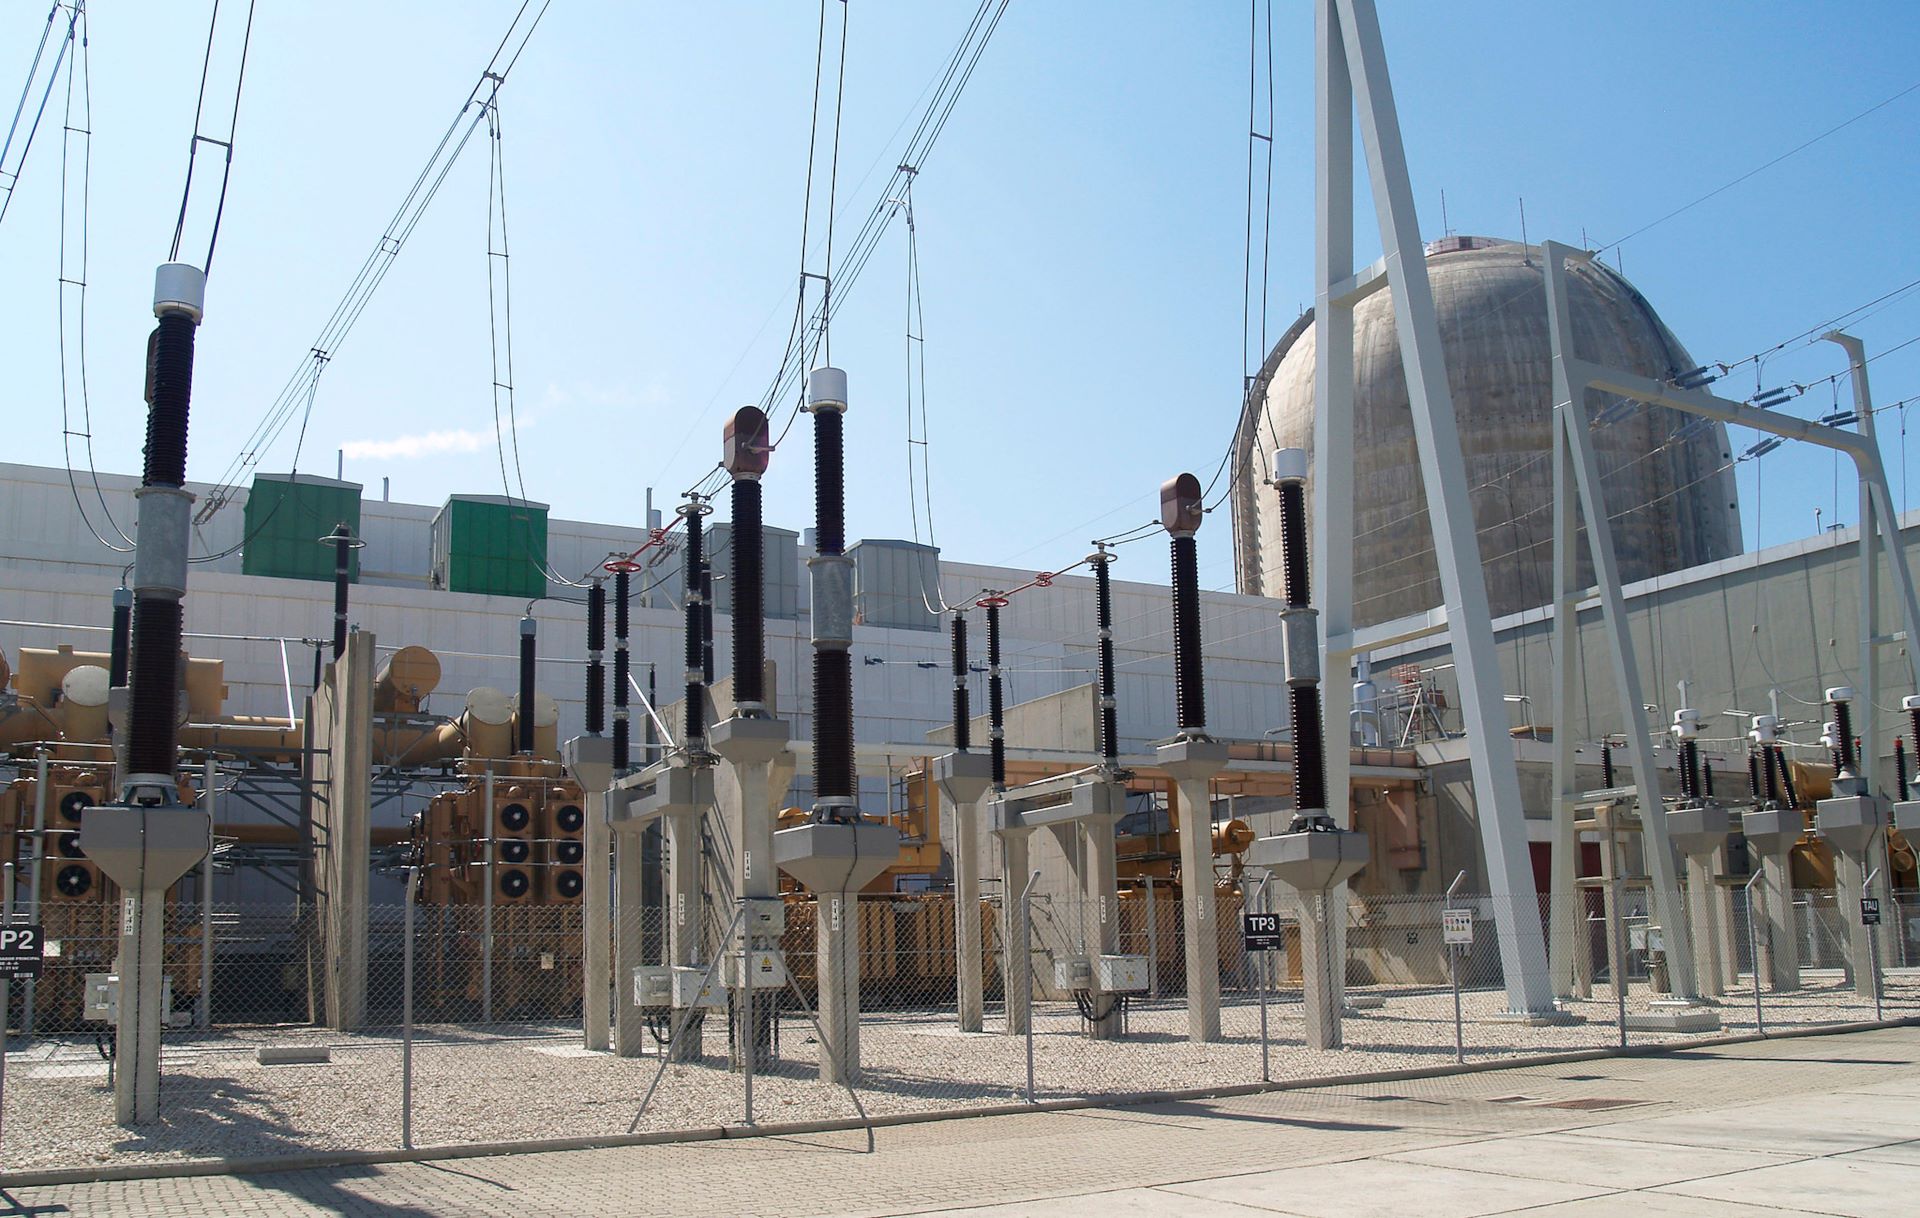 La central nuclear de Vandellòs II pateix una aturada per la pèrdua d'alimentació elèctrica